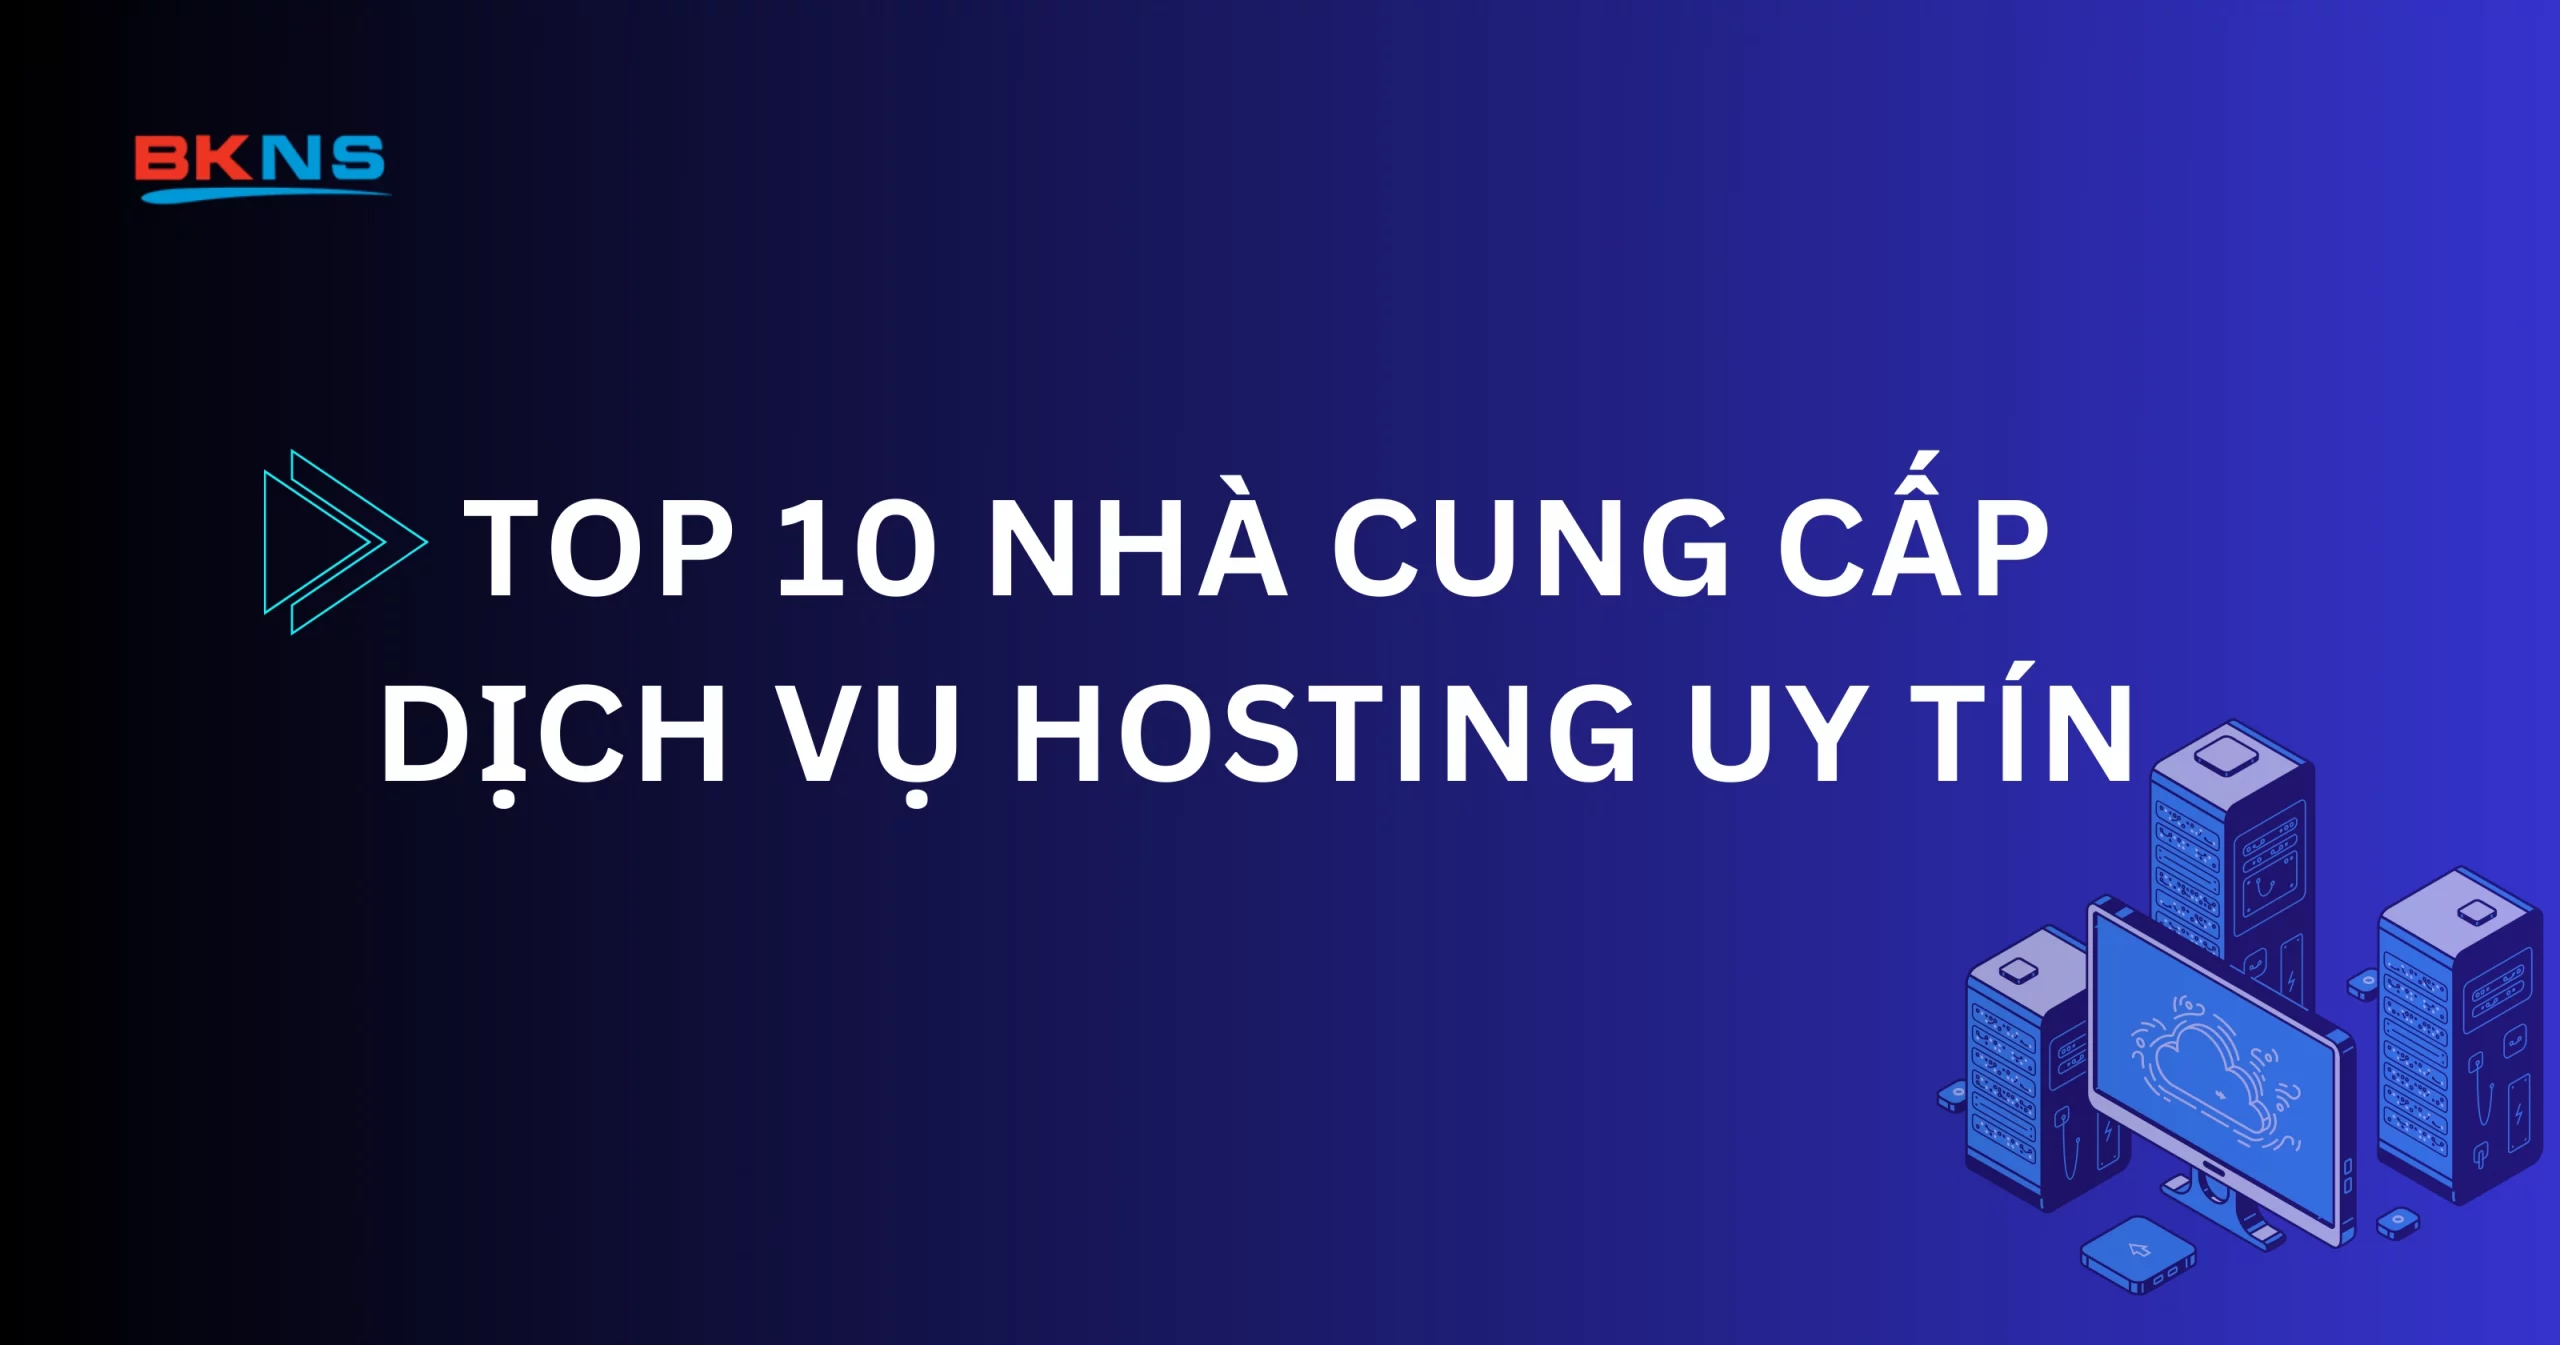 Top 10 Nhà cung cấp dịch vụ Hosting uy tín nhất Việt Nam